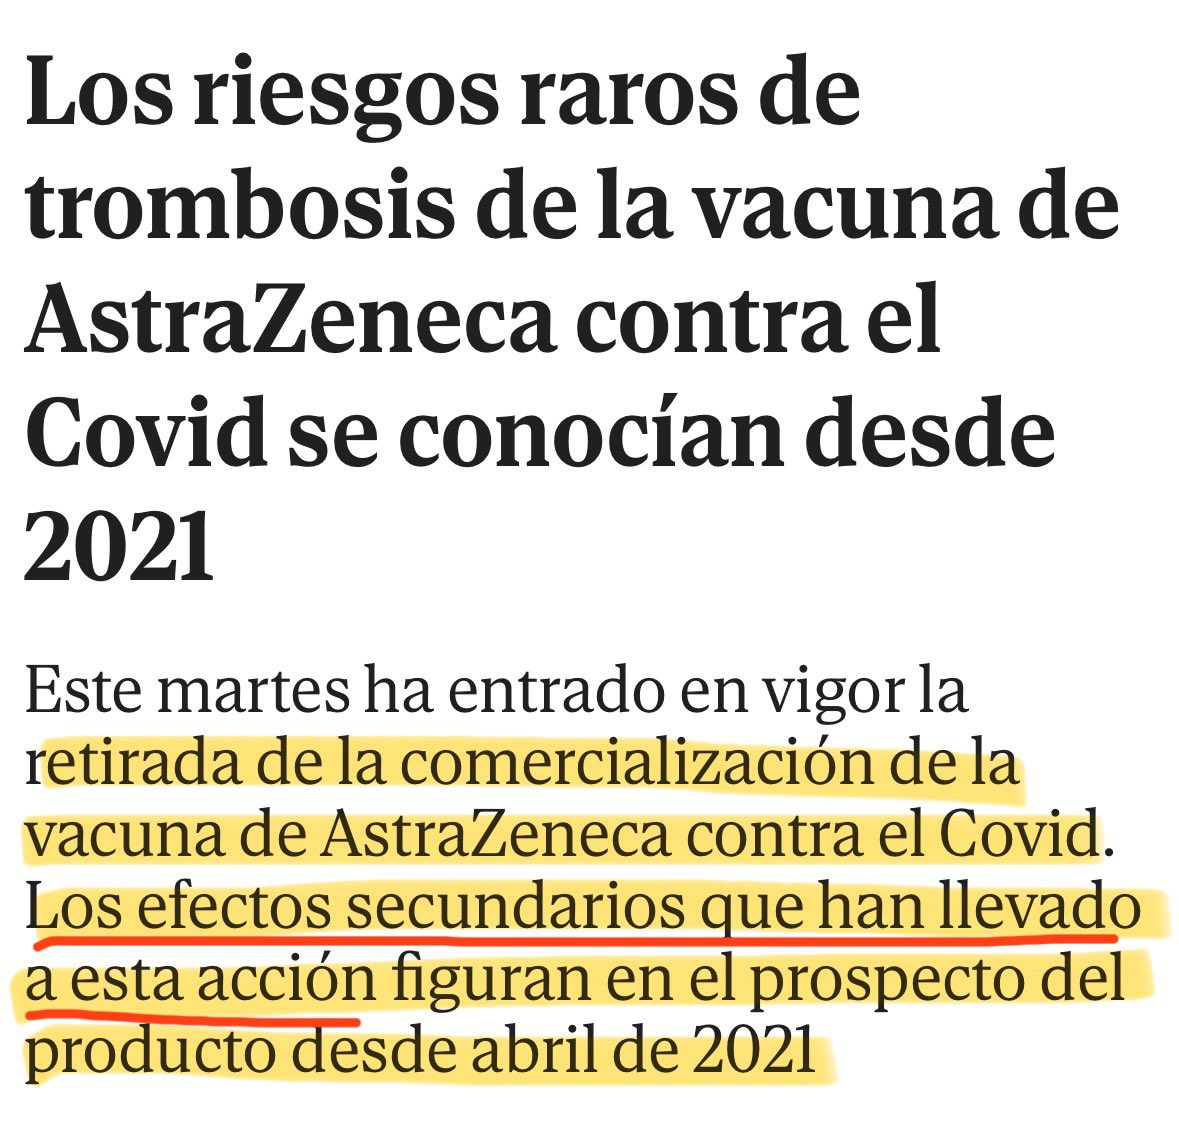 Lo que afirma @elmundoes en esta entradilla no es cierto: la autorización de comercialización de la vacuna de AstraZeneca NO ha sido retirada por los riesgos raros de trombosis. Se debe a una petición del fabricante porque está desactualizada, hay un excedente y no hay demanda.